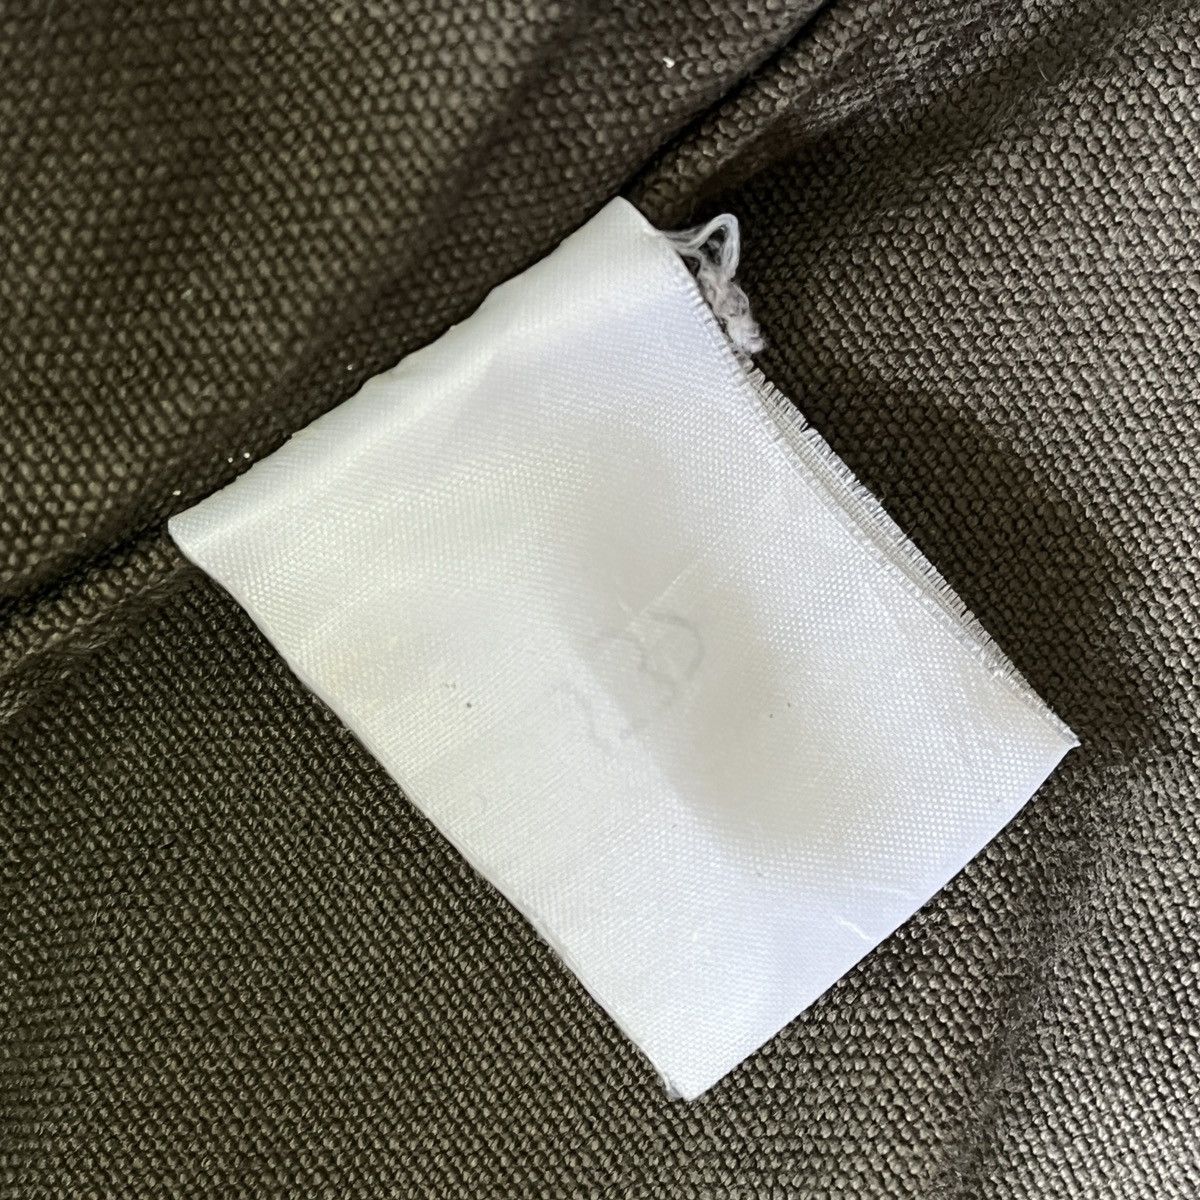 Uniqlo Chore Jacket Japan Size XL - 17